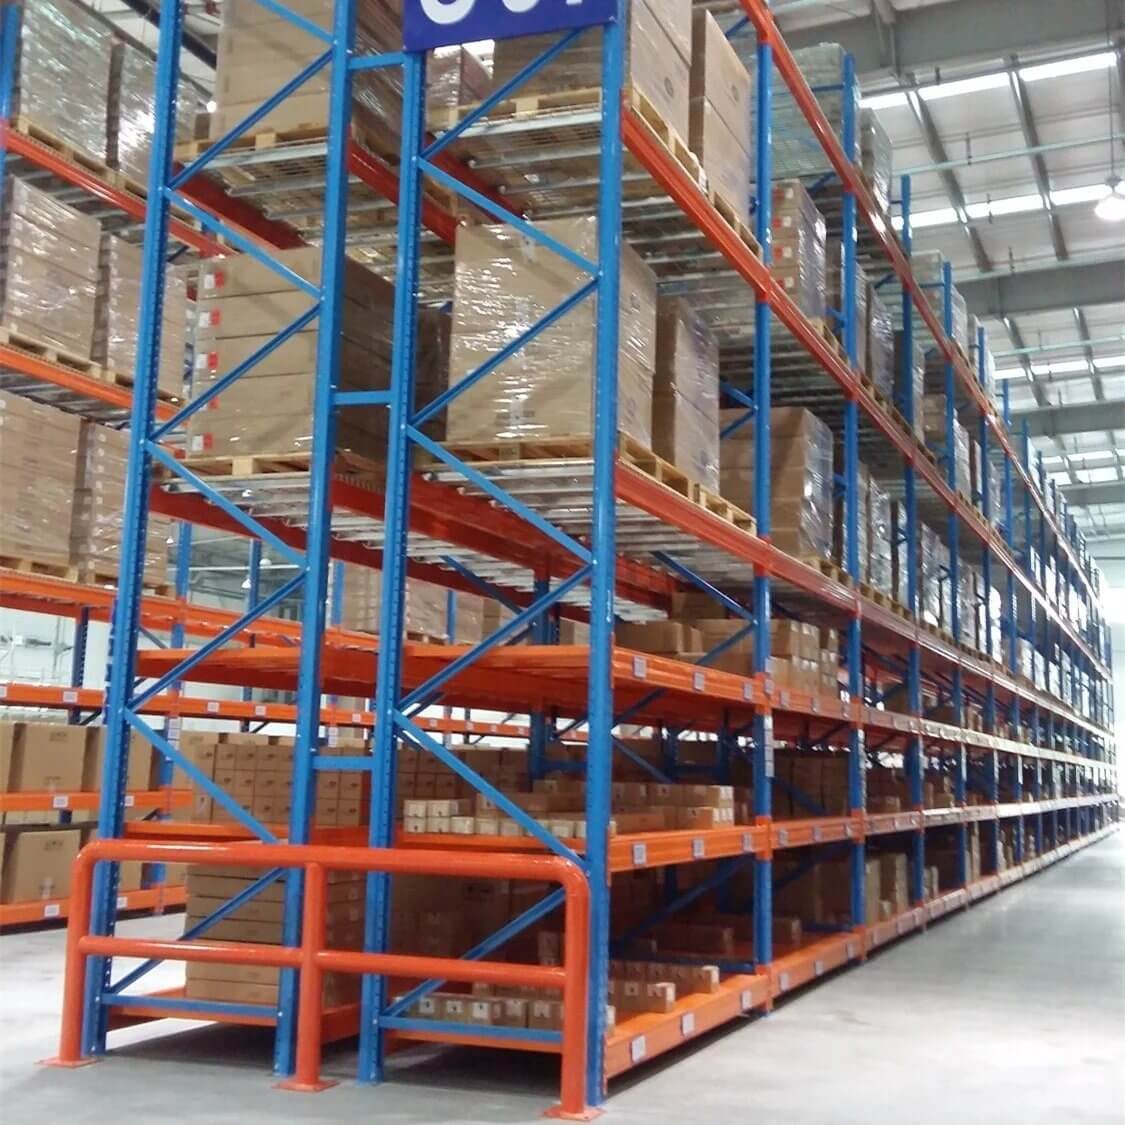 Modern Warehouse Storage Rack Manufacturers In Noida, Delhi